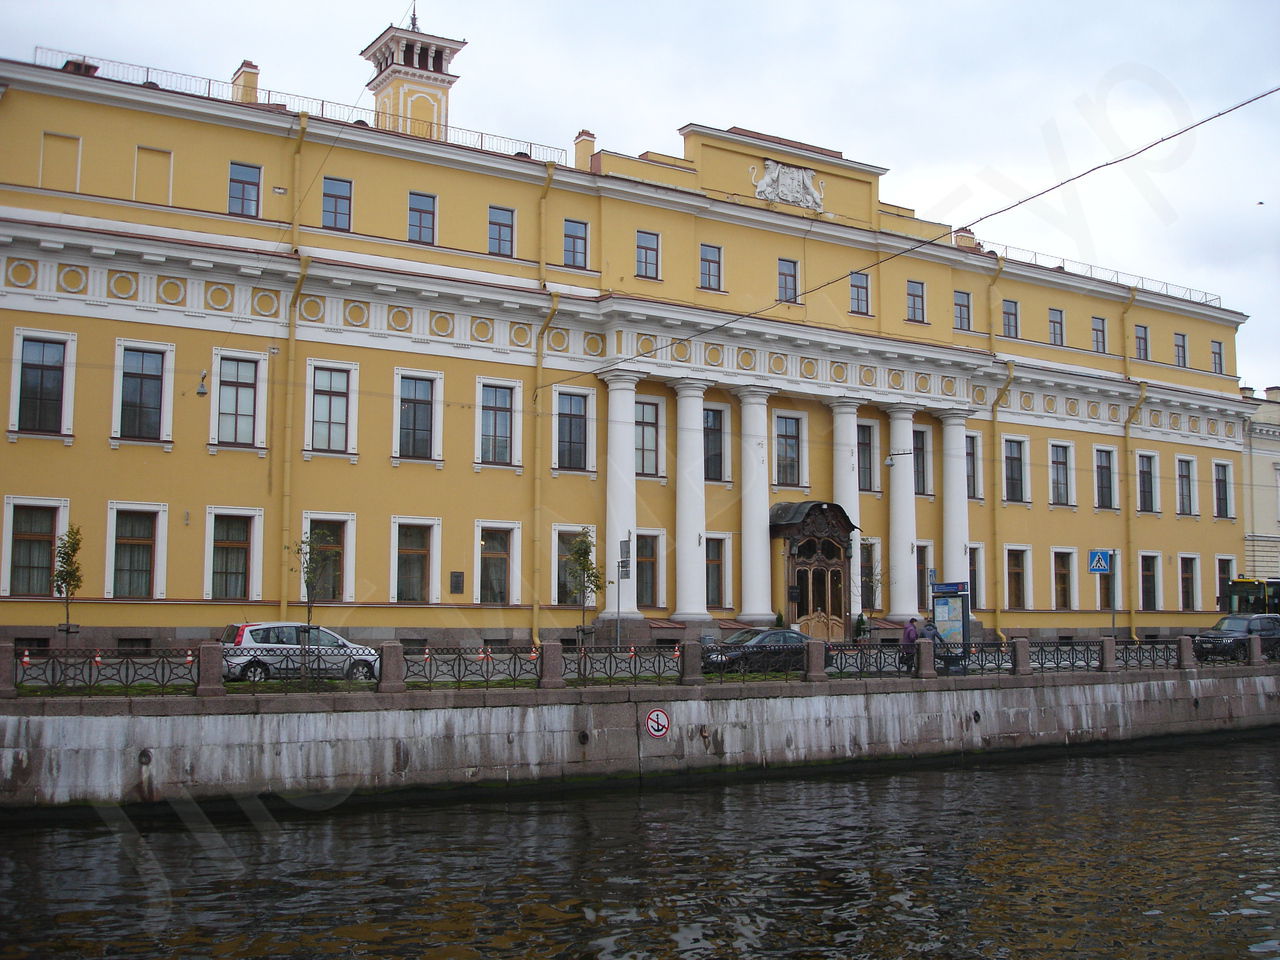 Юсуповский дворец.Мойка.Санкт-Петербург